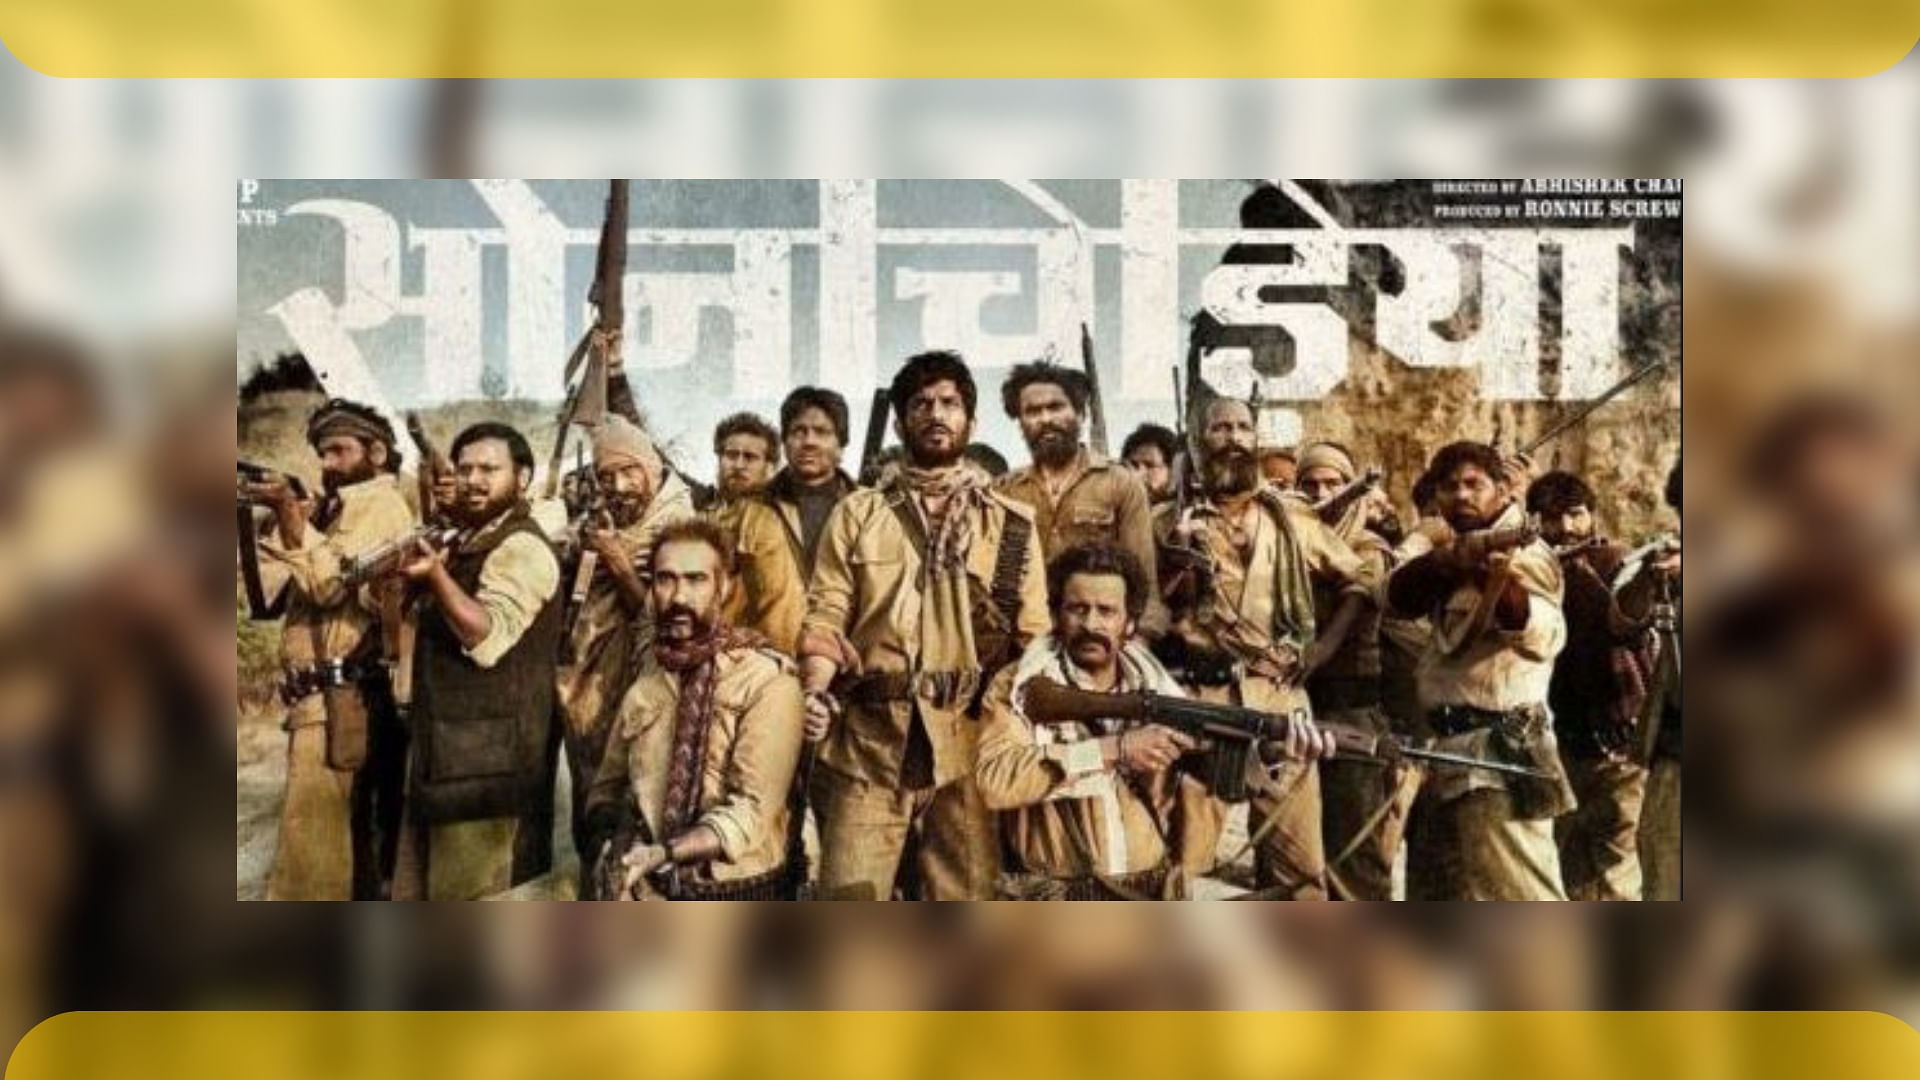 बंदूकबाज डकैत बने सुशांत सिंह राजपूत की फिल्म ‘सोन चिड़िया’ का ट्रेलर रिलीज हो गया है.